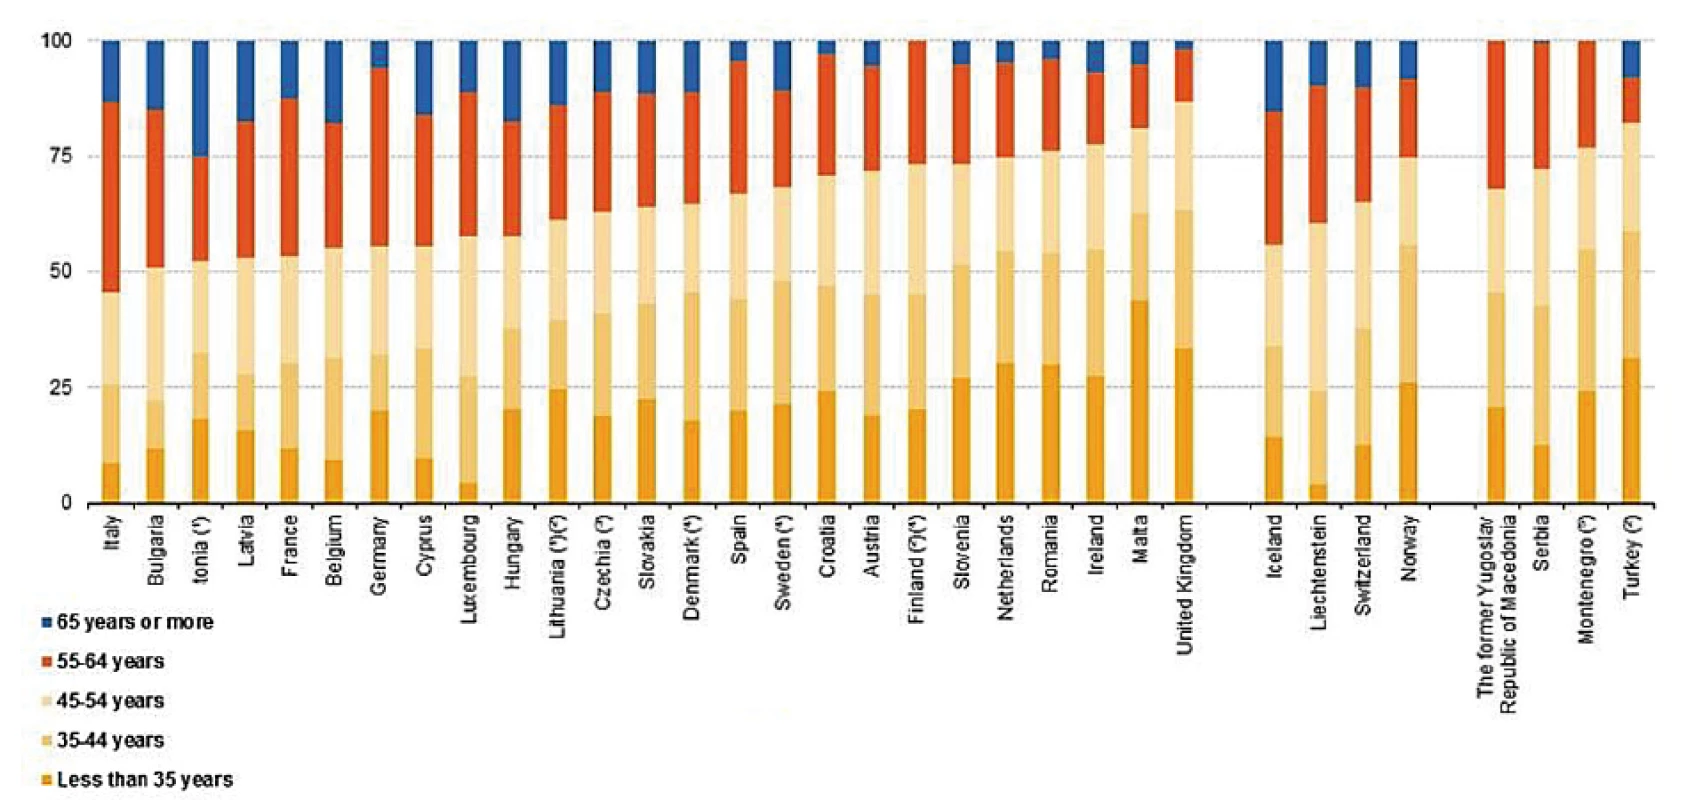 Lékaři podle věku – rok 2016. Zdroj: Eurostat